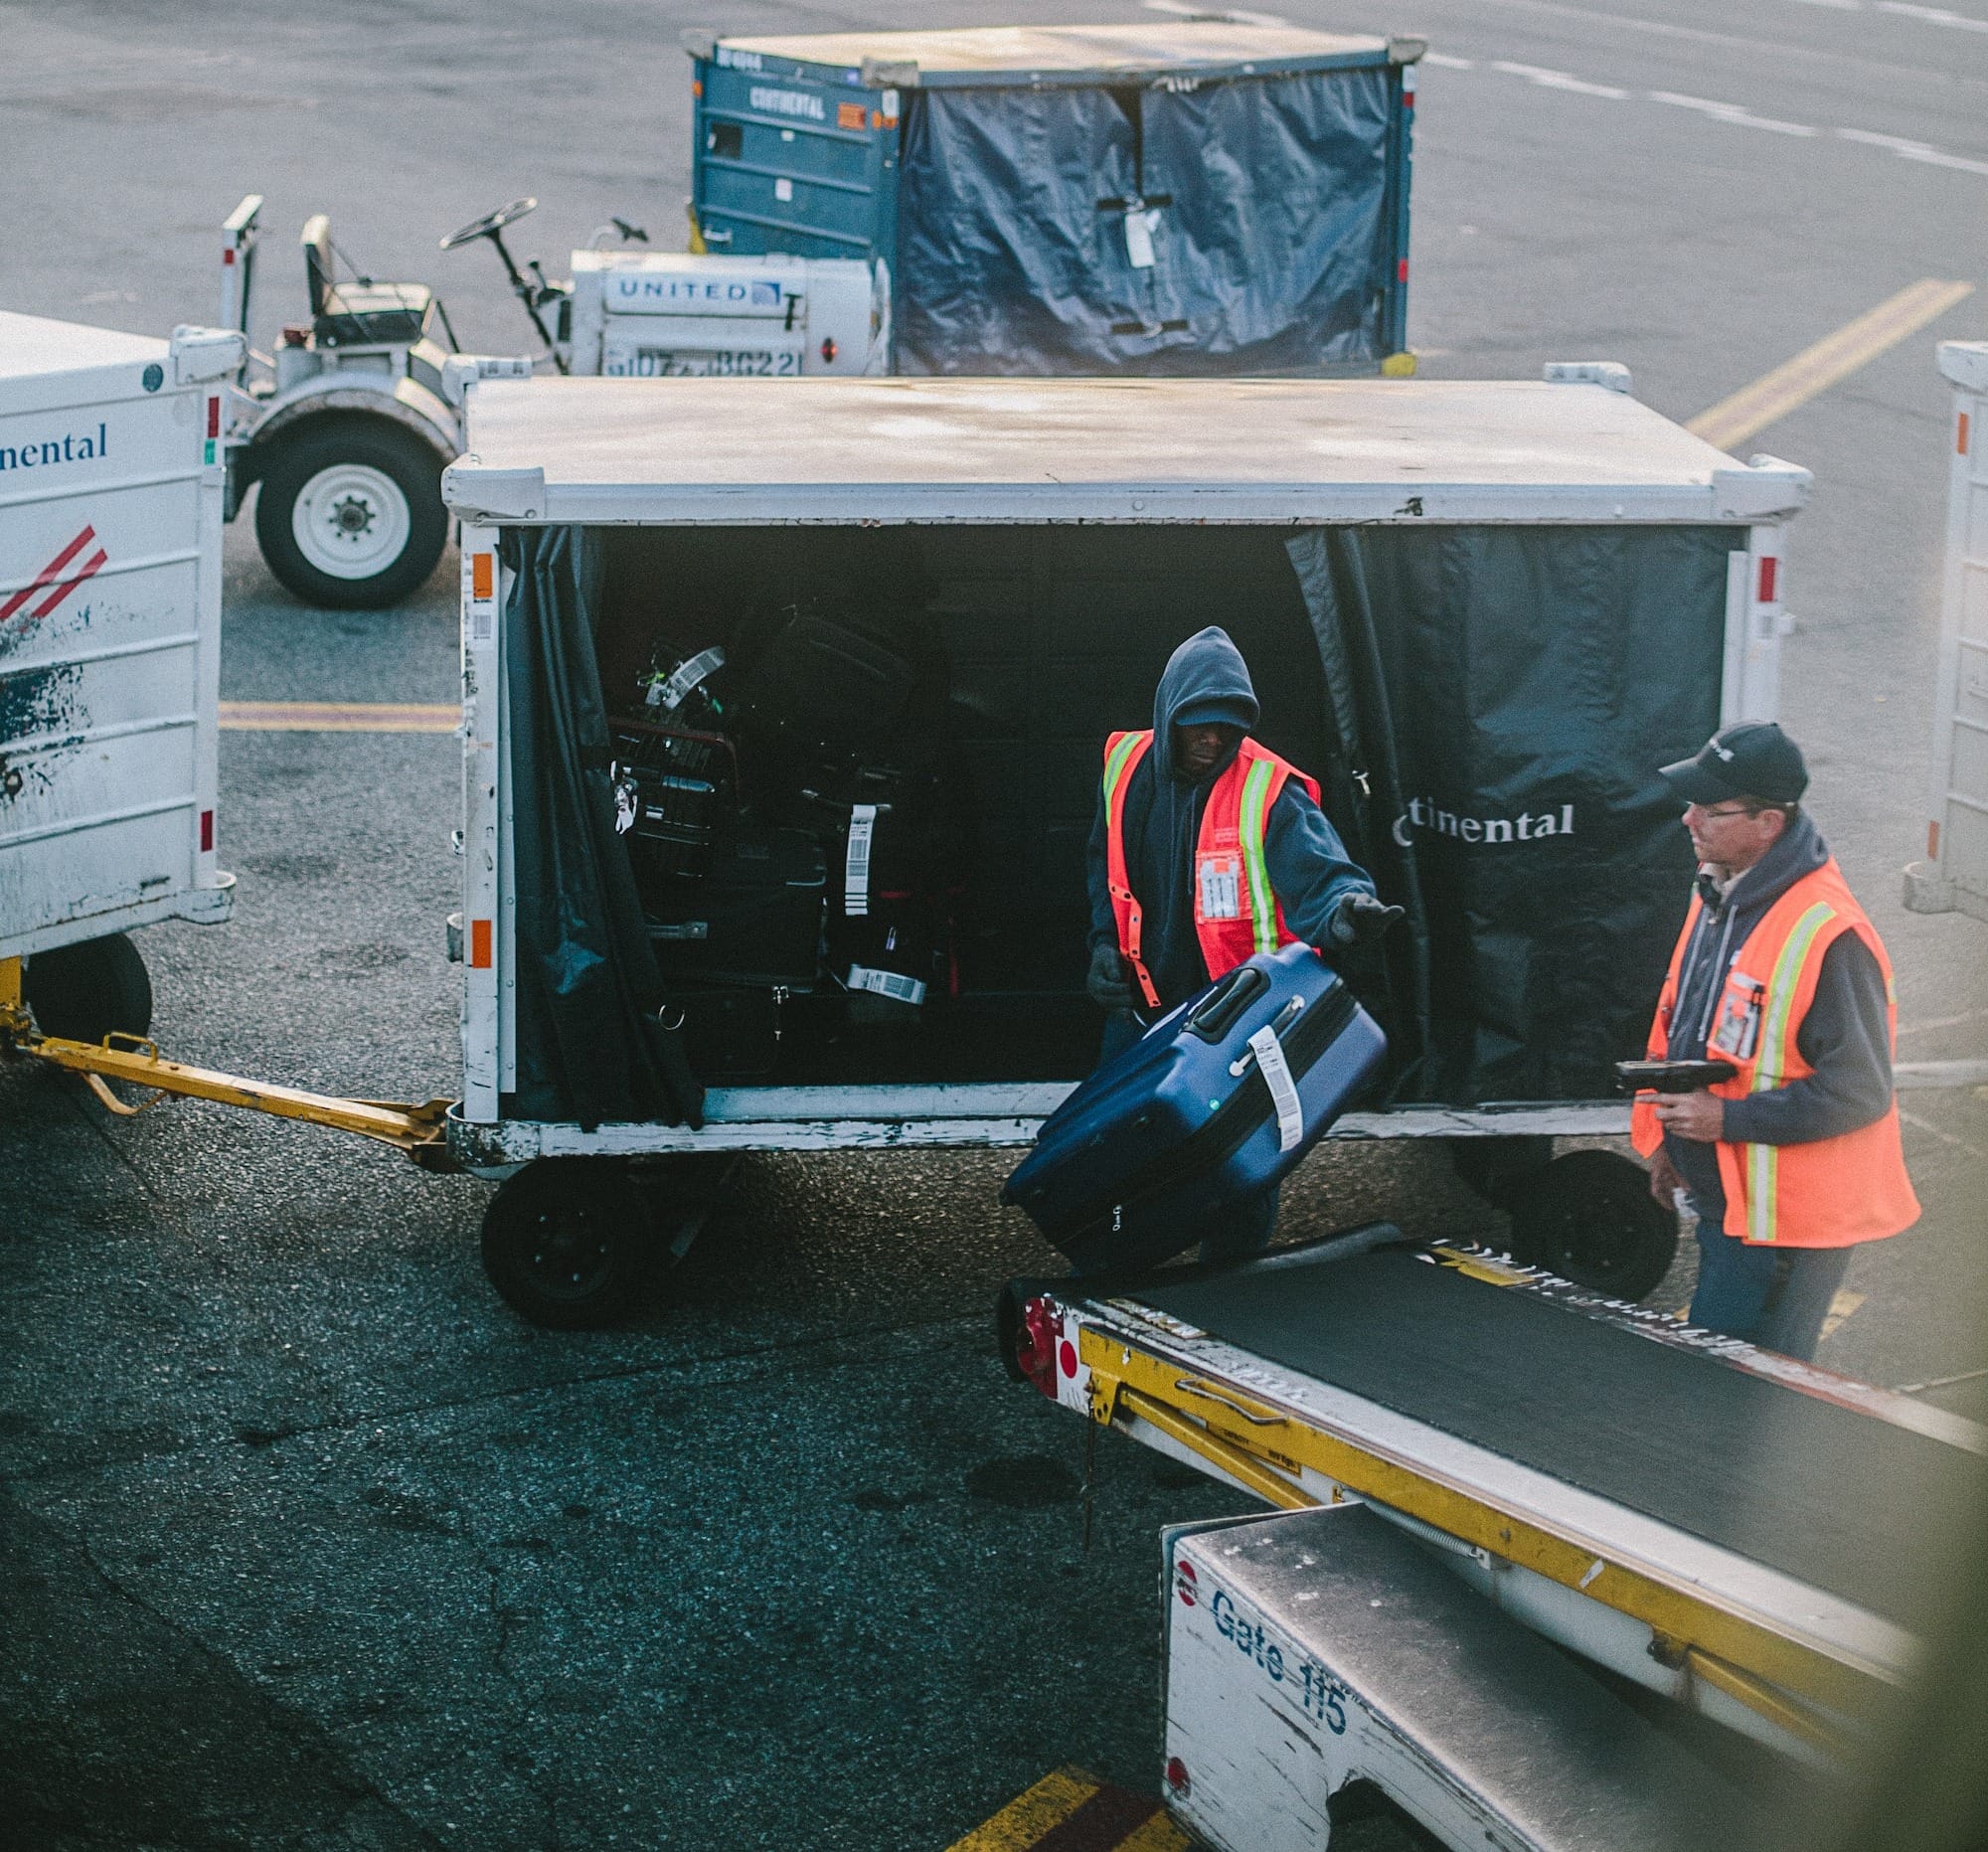 Эти лайфхаки спасут ваш багаж при перелете! 2 важных совета от бортпроводника, которые помогут не остаться без чемодана